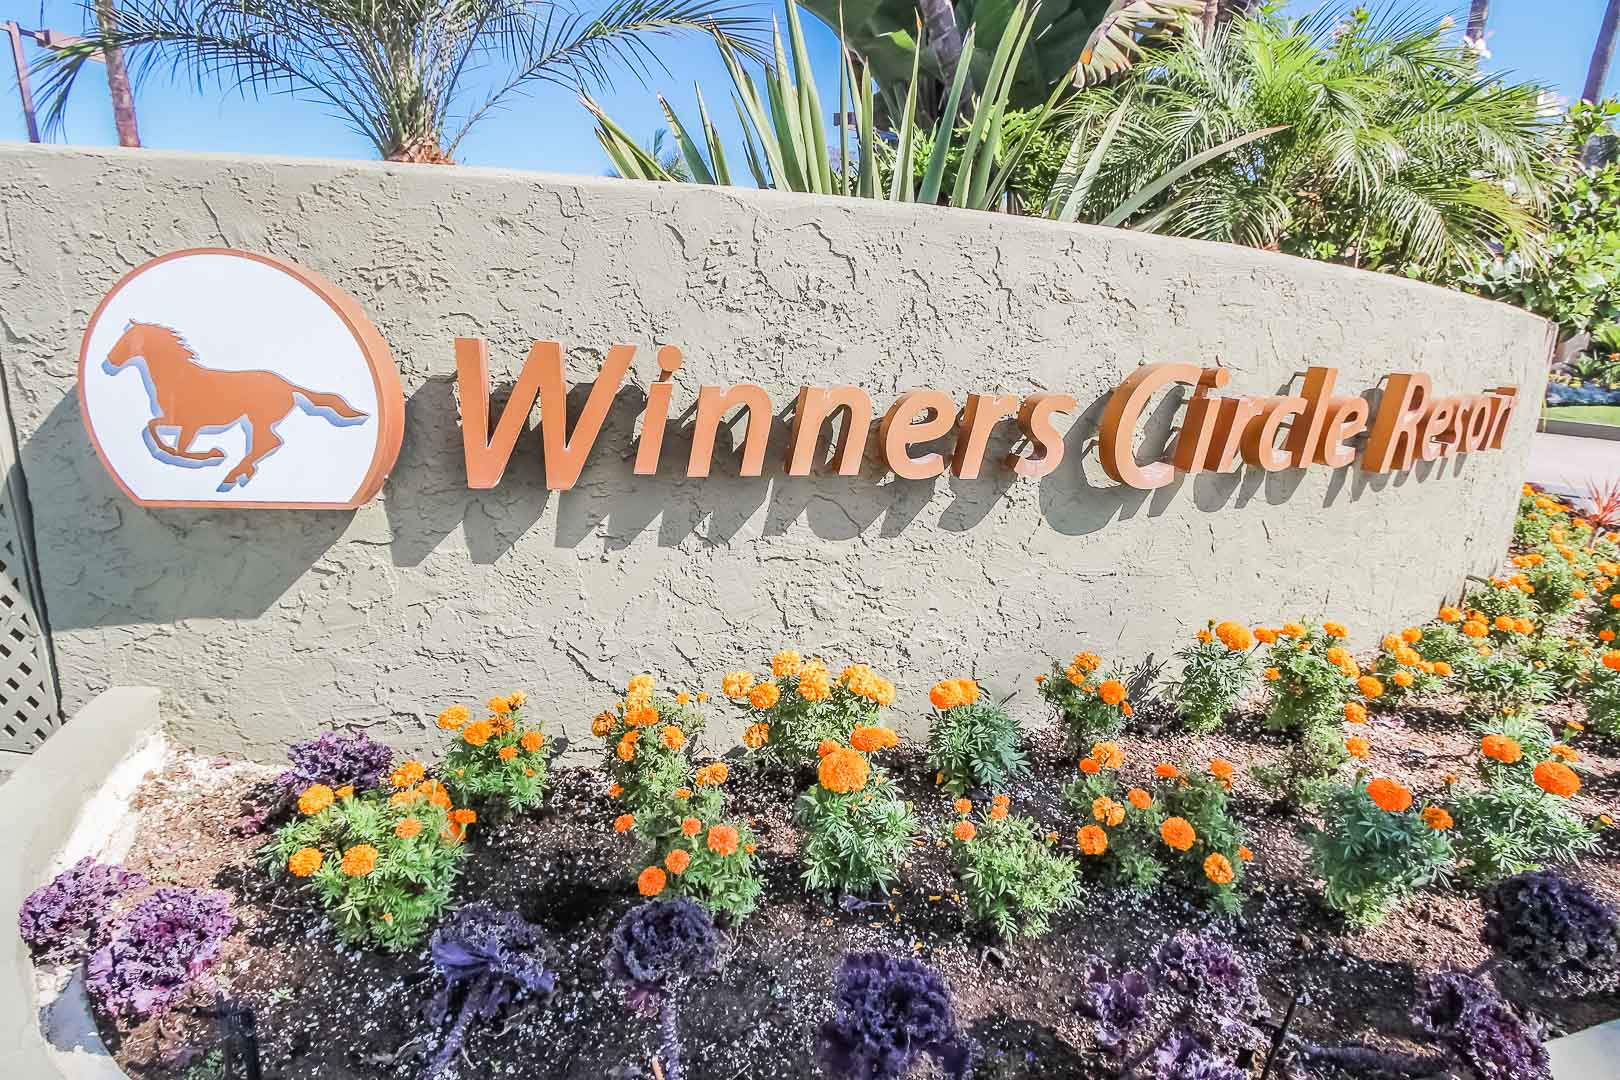 The resort signage at VRI's Winner Circle Resort in California.